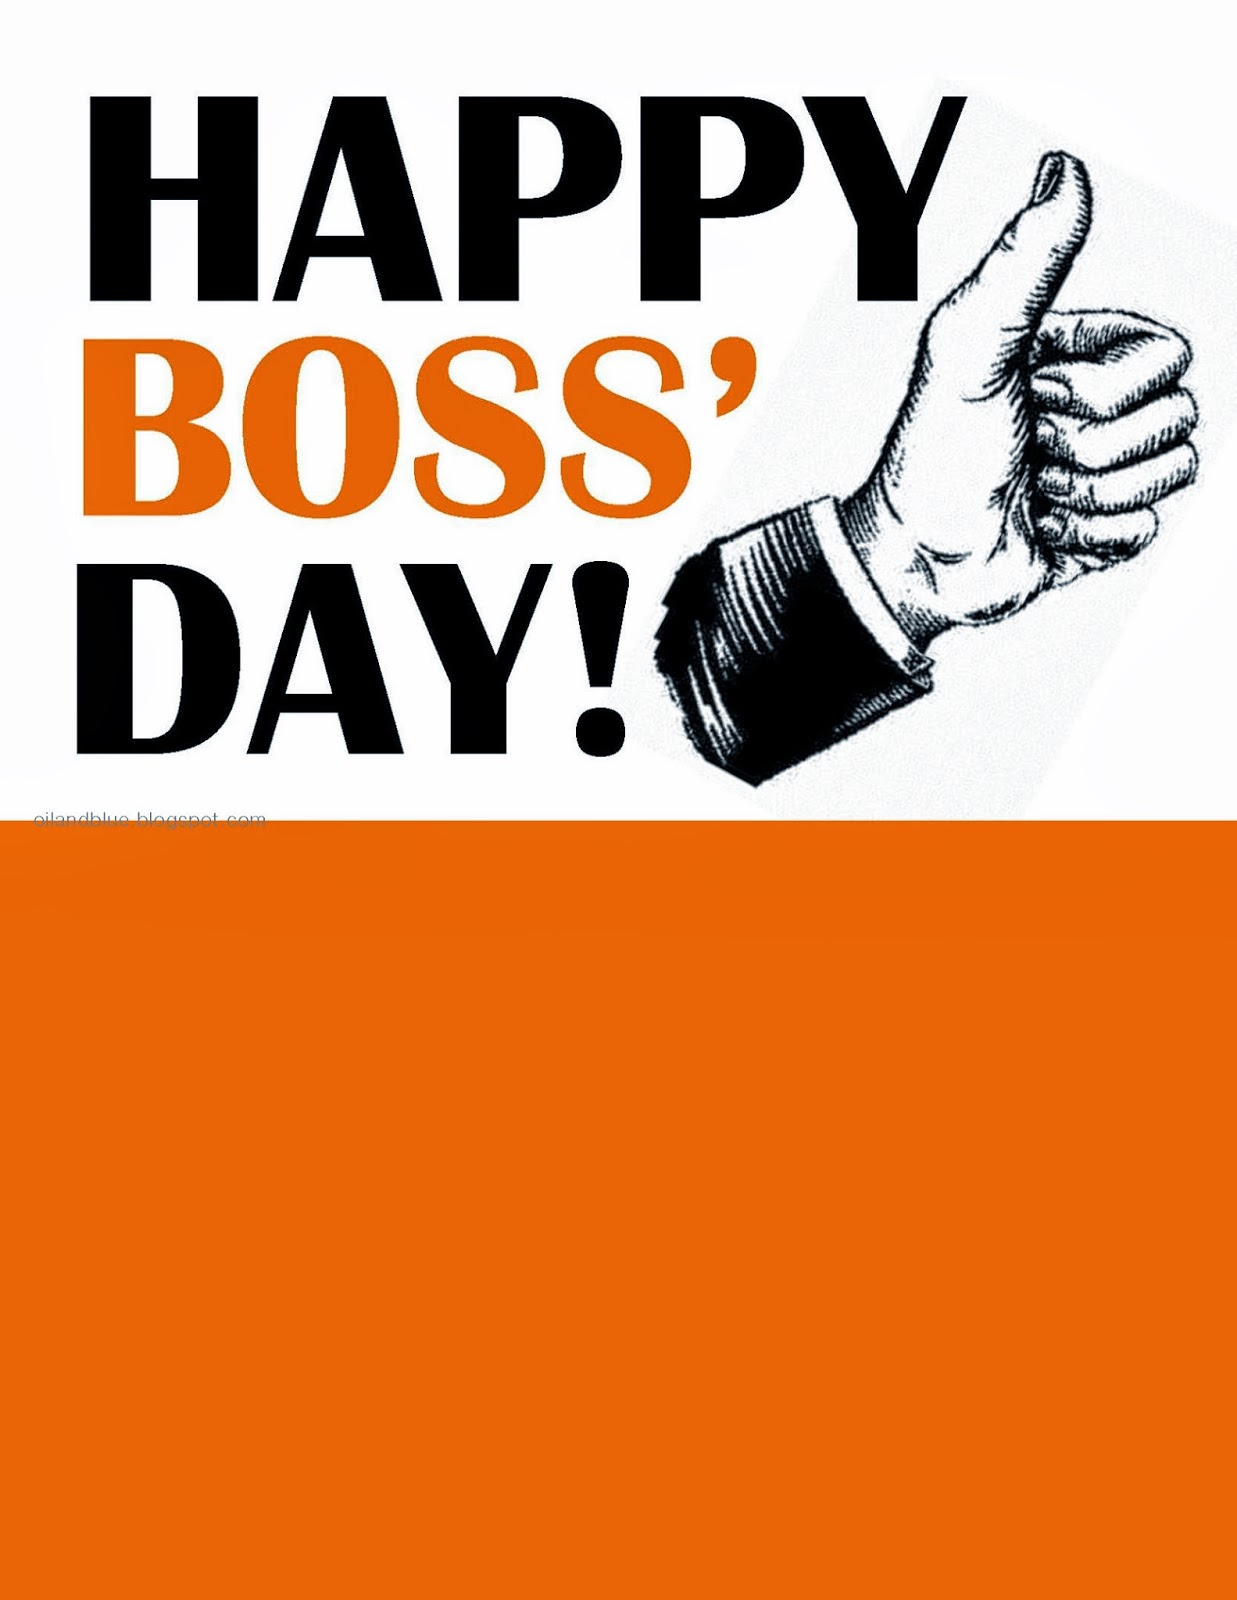 clip art happy boss's day - photo #2